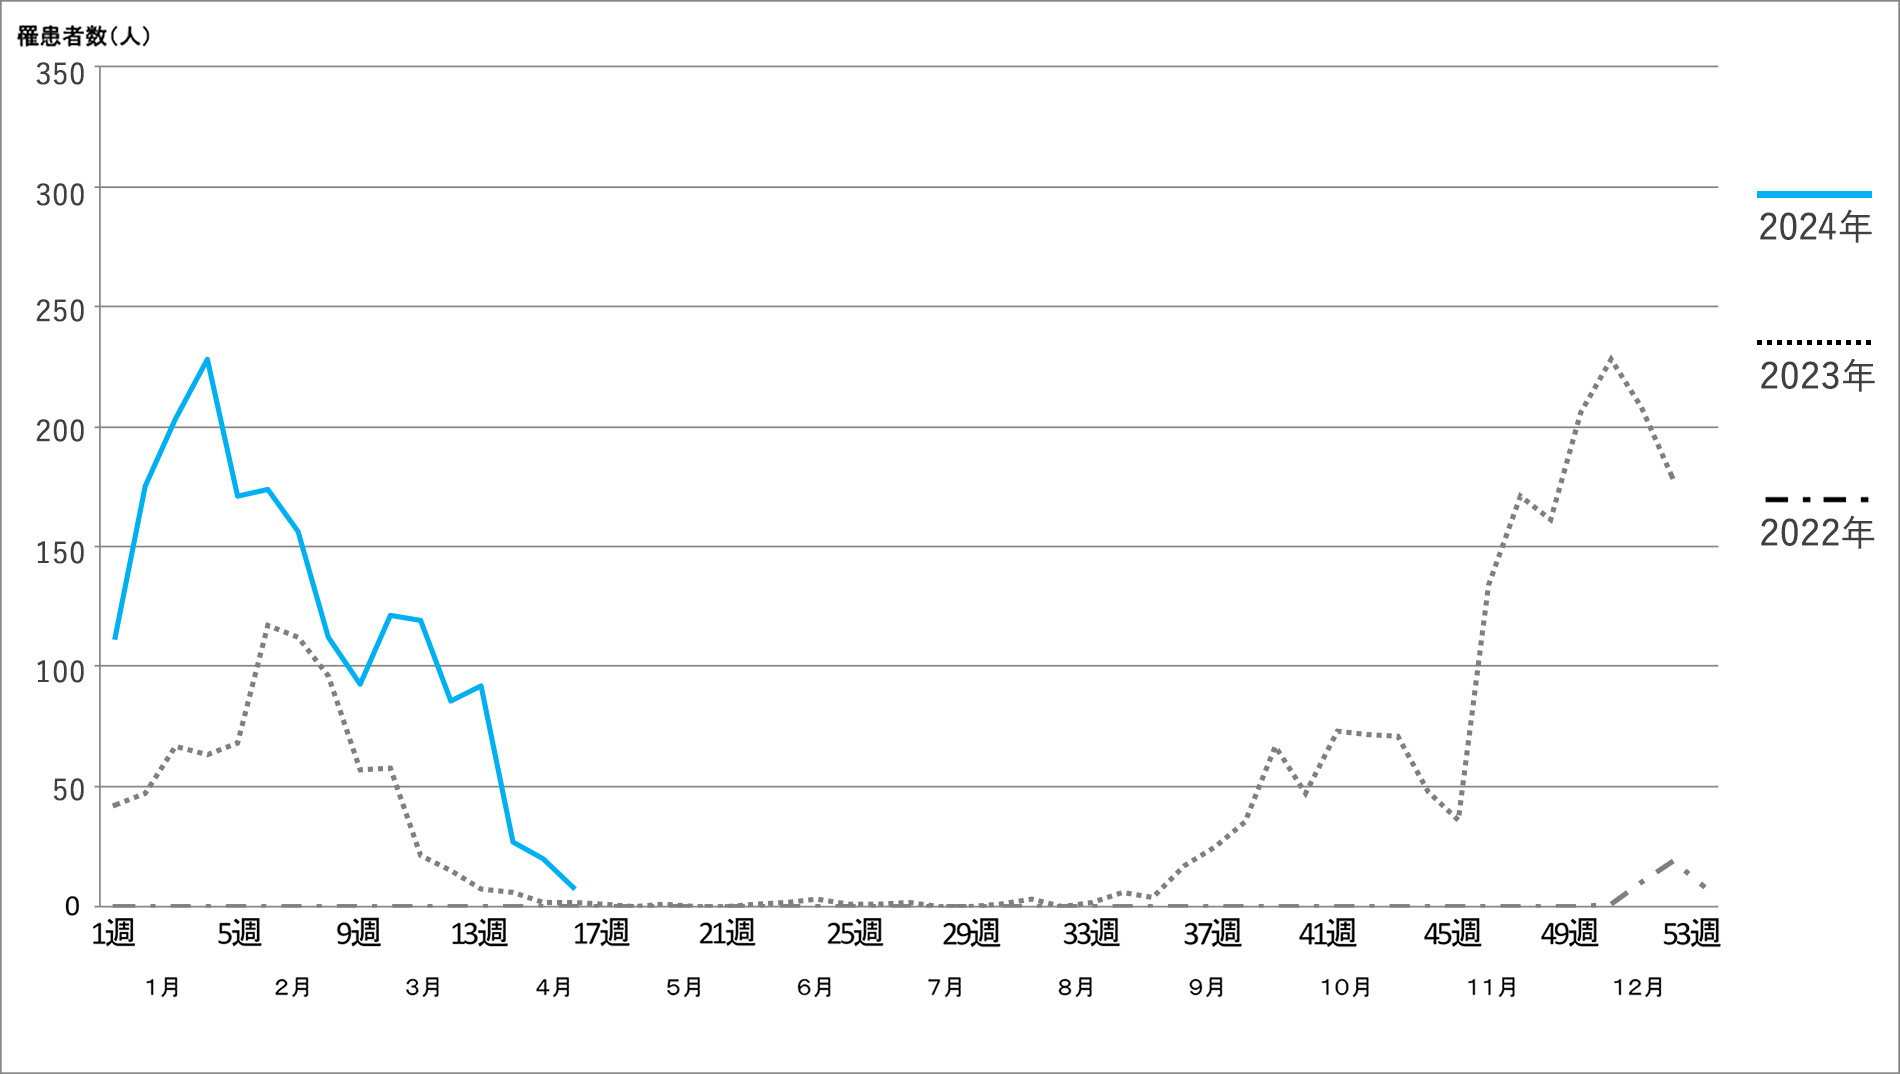 インフルエンザサーベイランス 年間グラフ